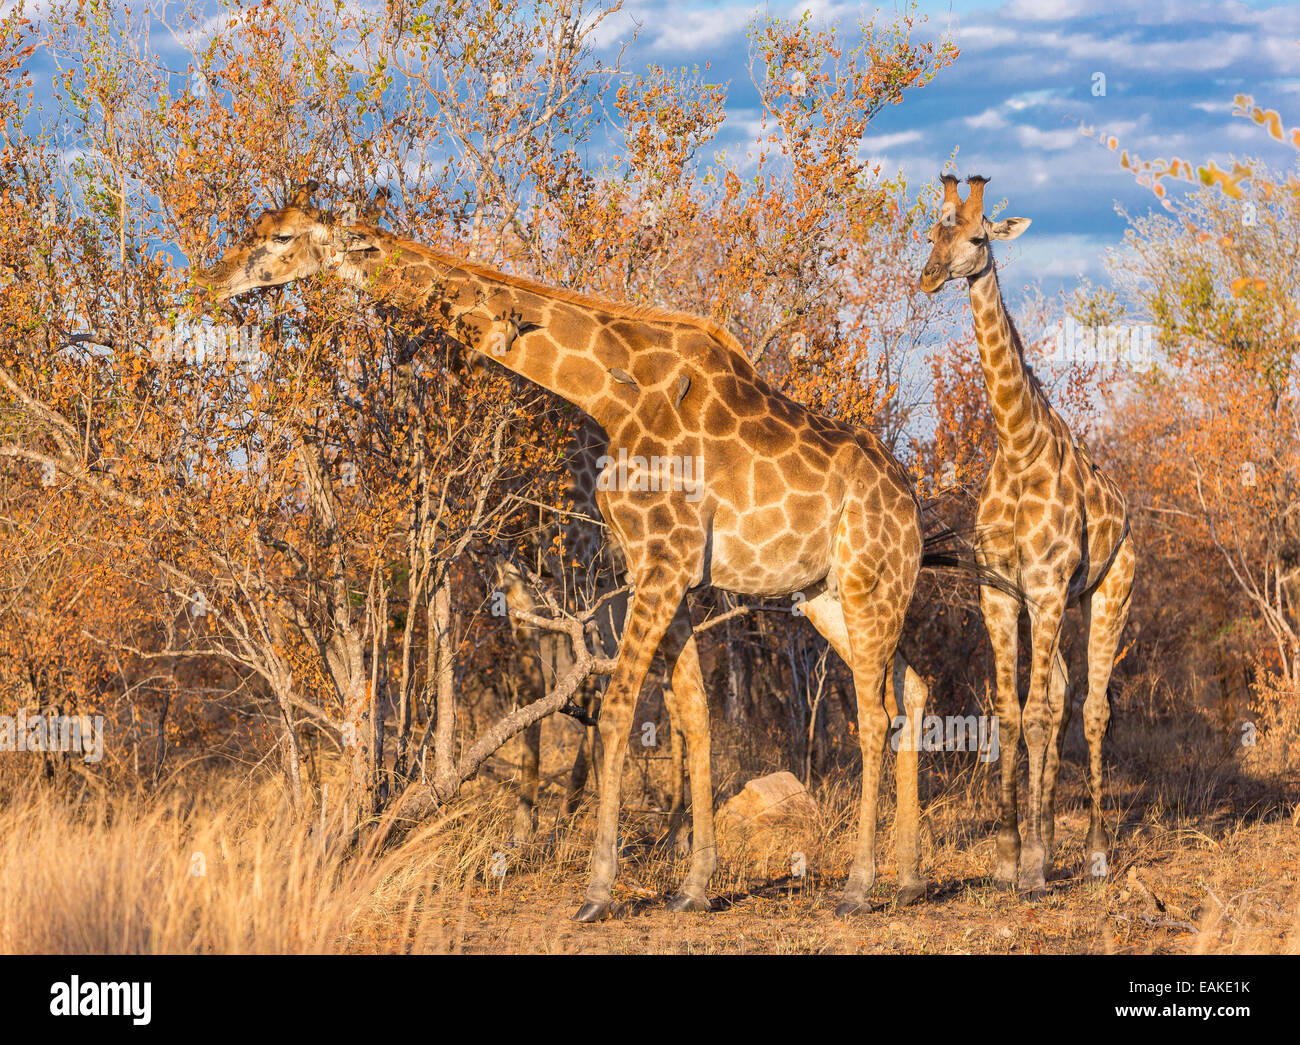 Krüger-Nationalpark, Südafrika - Giraffe Fütterung in den Bäumen im Buschland. Stockfoto